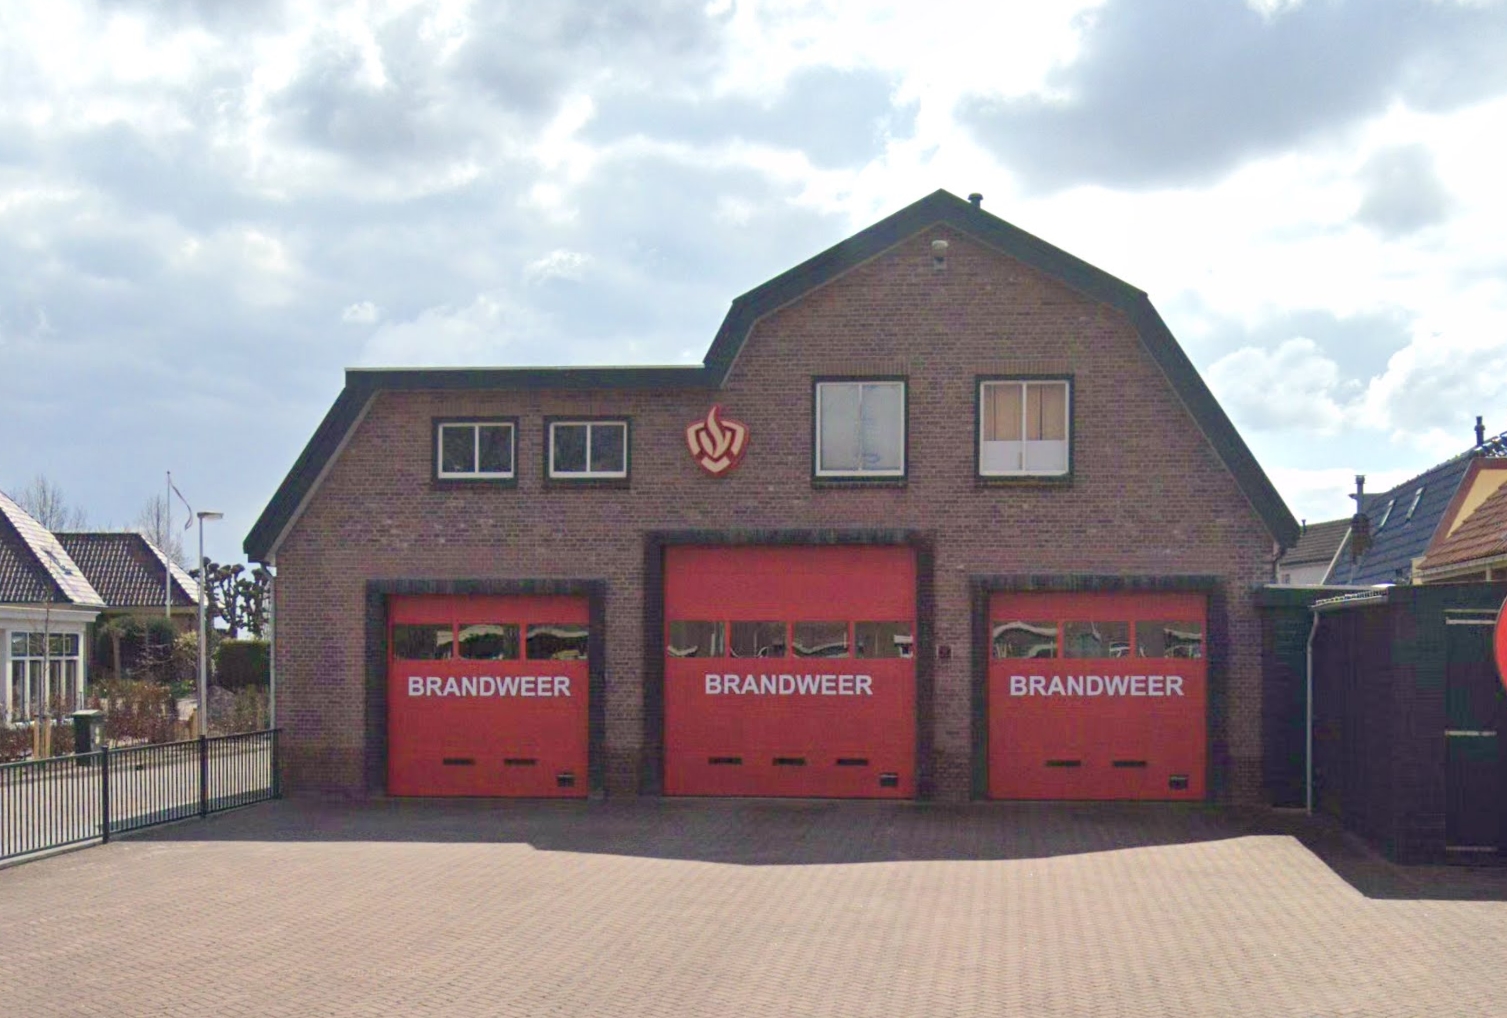 GemeenteBelangen wil opheldering over bezuinigingen brandweerkorps Noord-Holland Noord